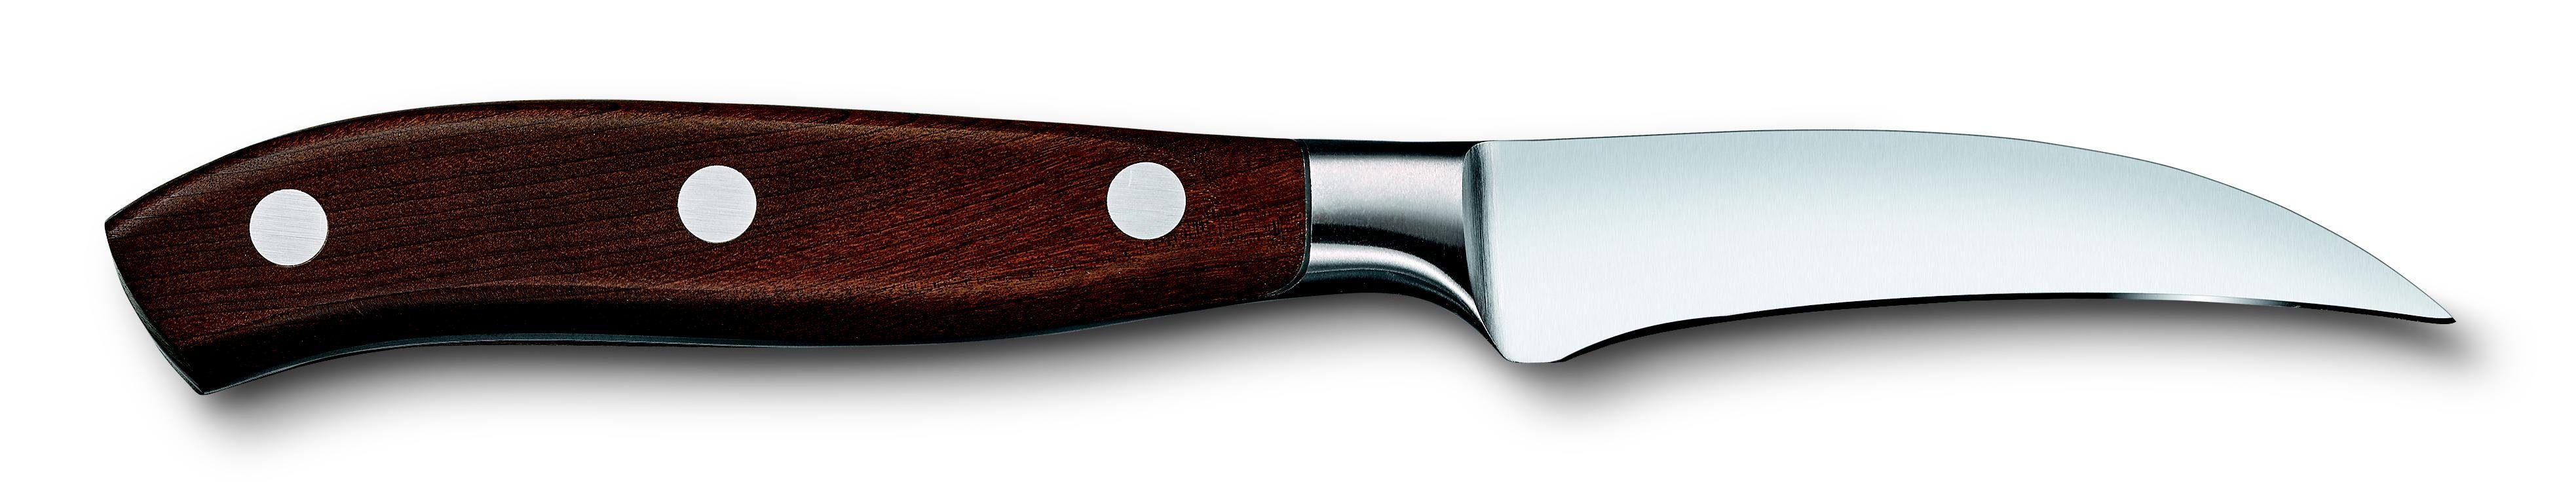 Tourniermesser, Grand Maître Taschenmesser Wood, Victorinox 8cm, Geschenkschachtel